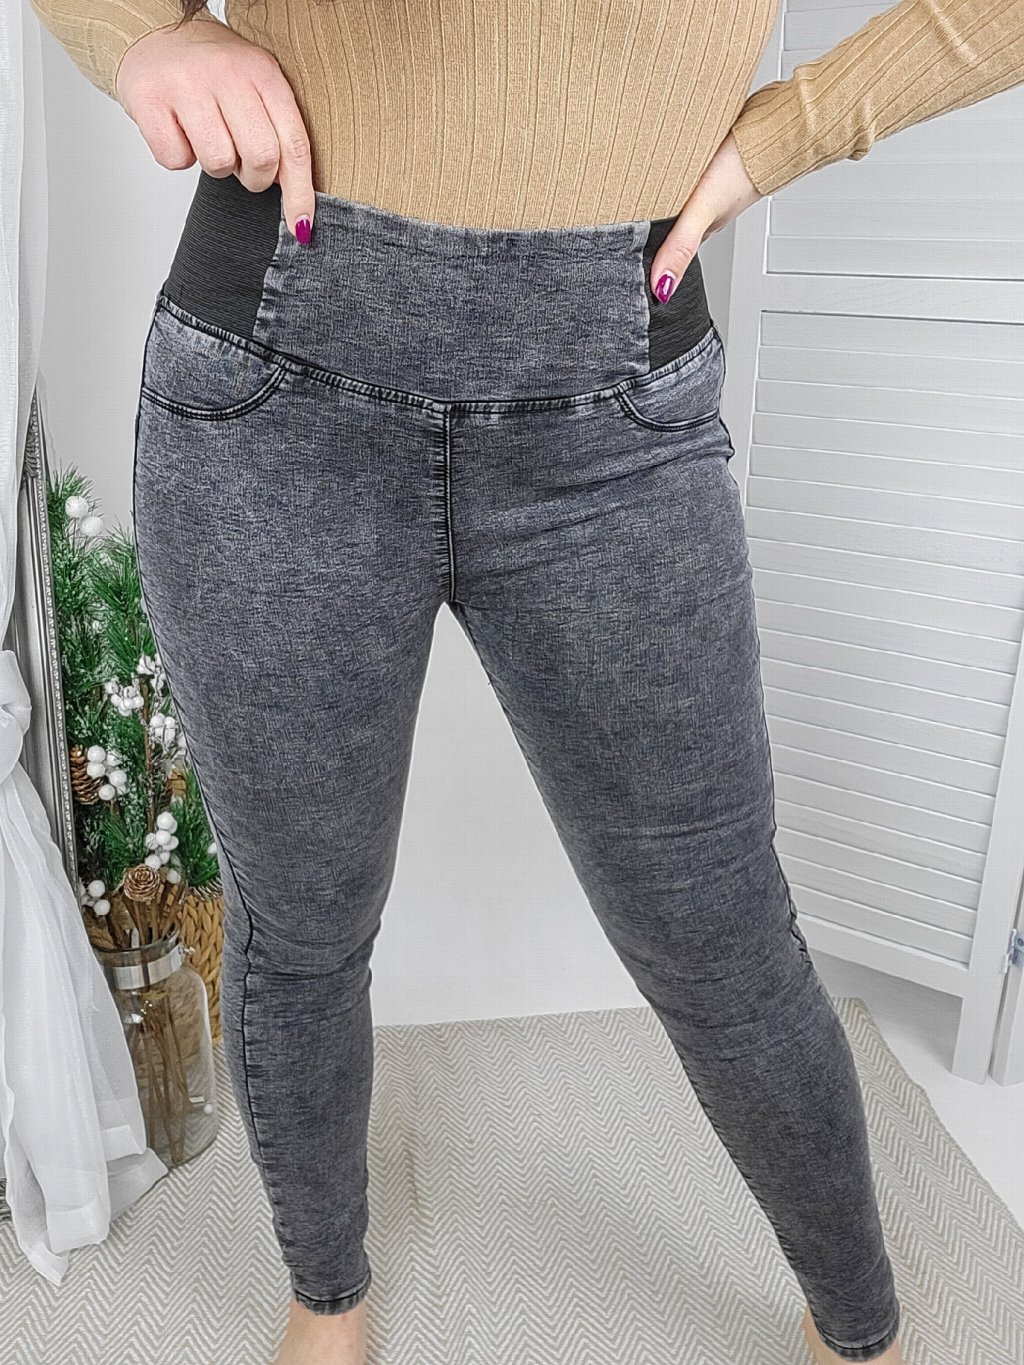 Kalhoty do gumy Stright šedé (Velikost 36)